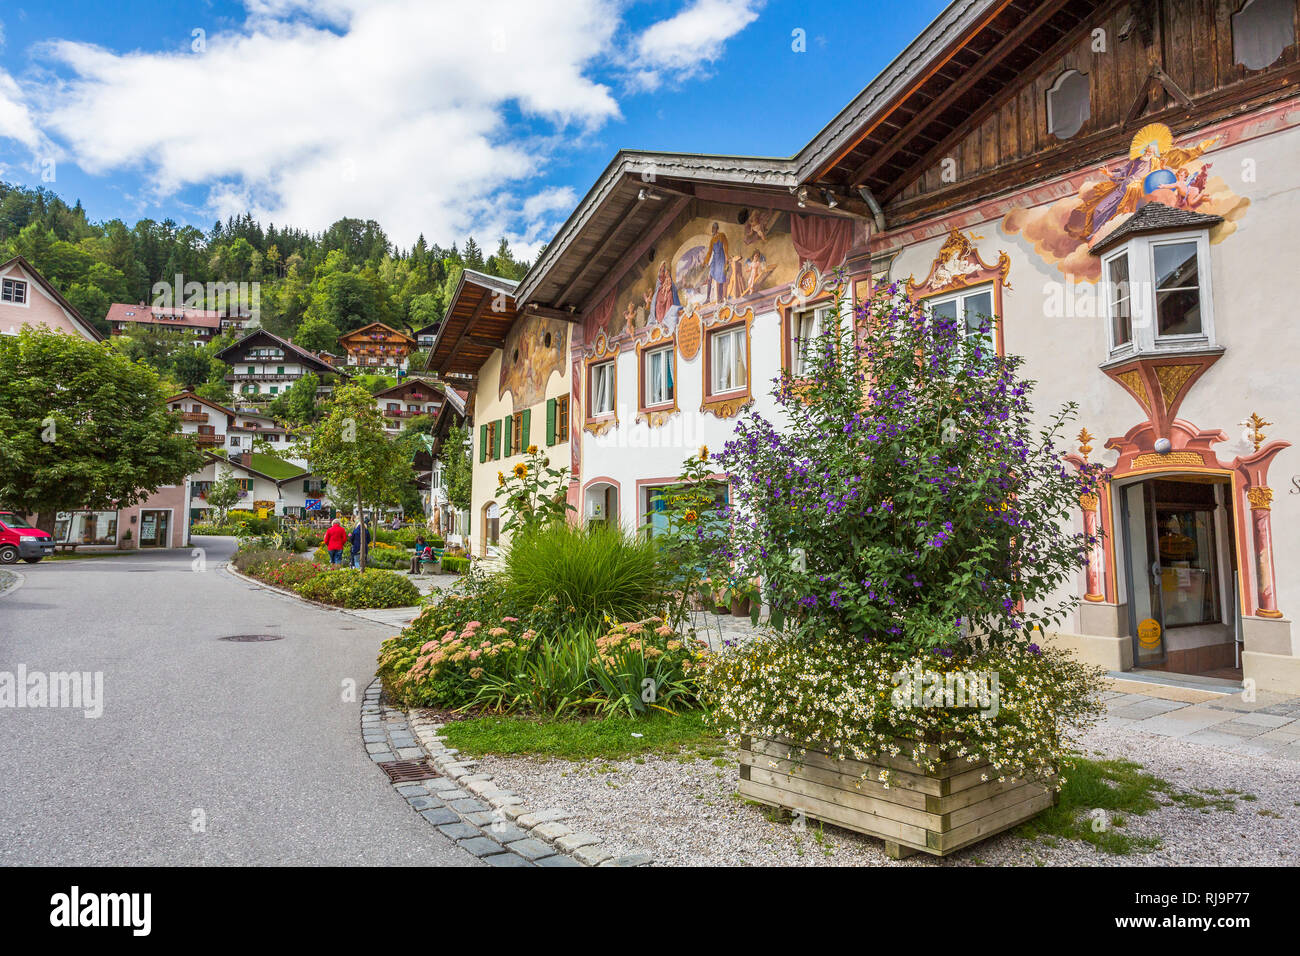 Hausfassaden mit Lüftlmalerei, Mittenwald, Werdenfelser Land, Oberbayern, Bayern, Deutschland, Europa Stock Photo